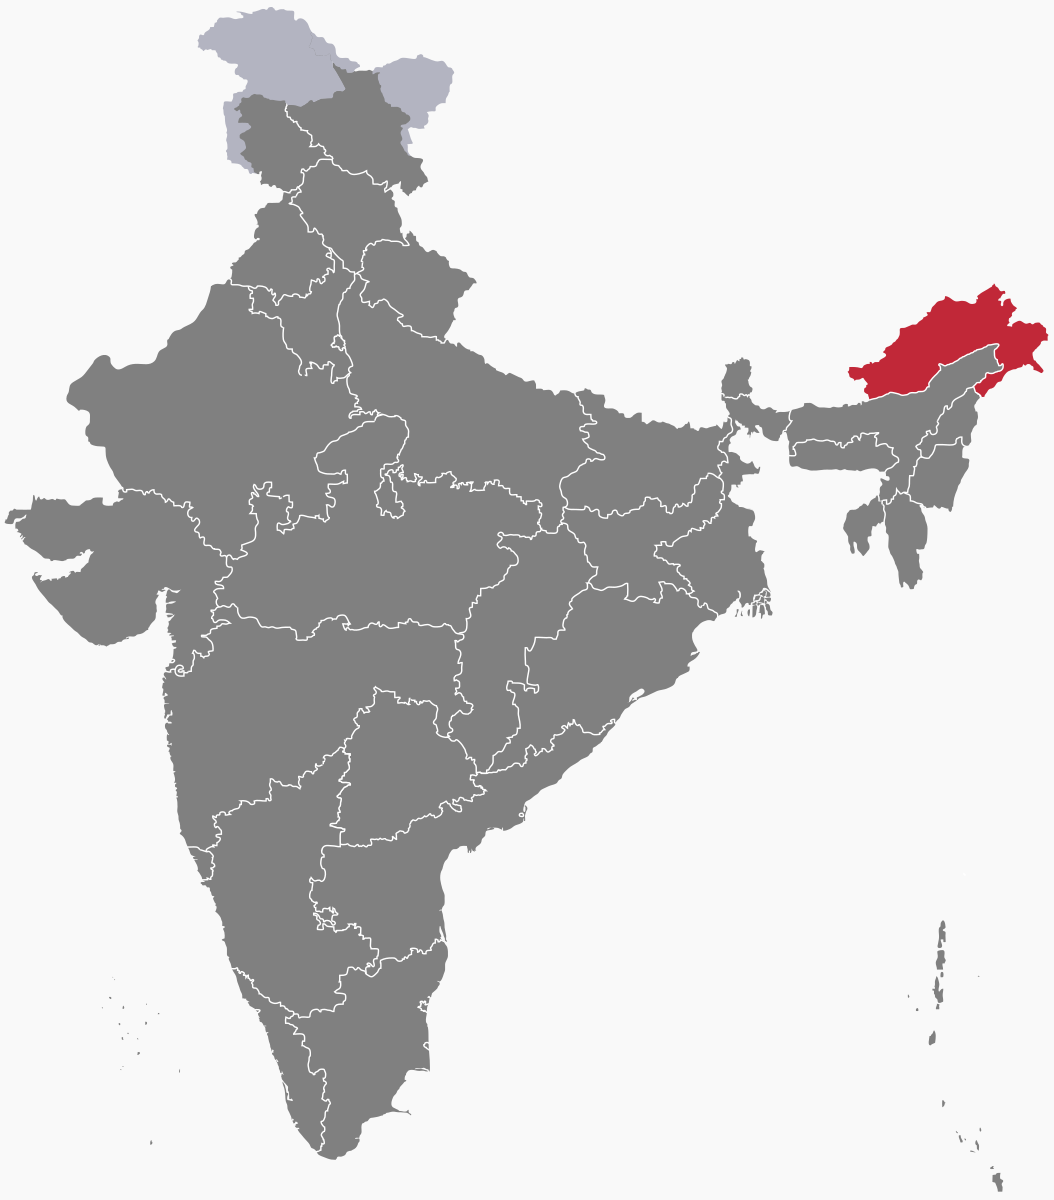 Outline of Arunachal Pradesh